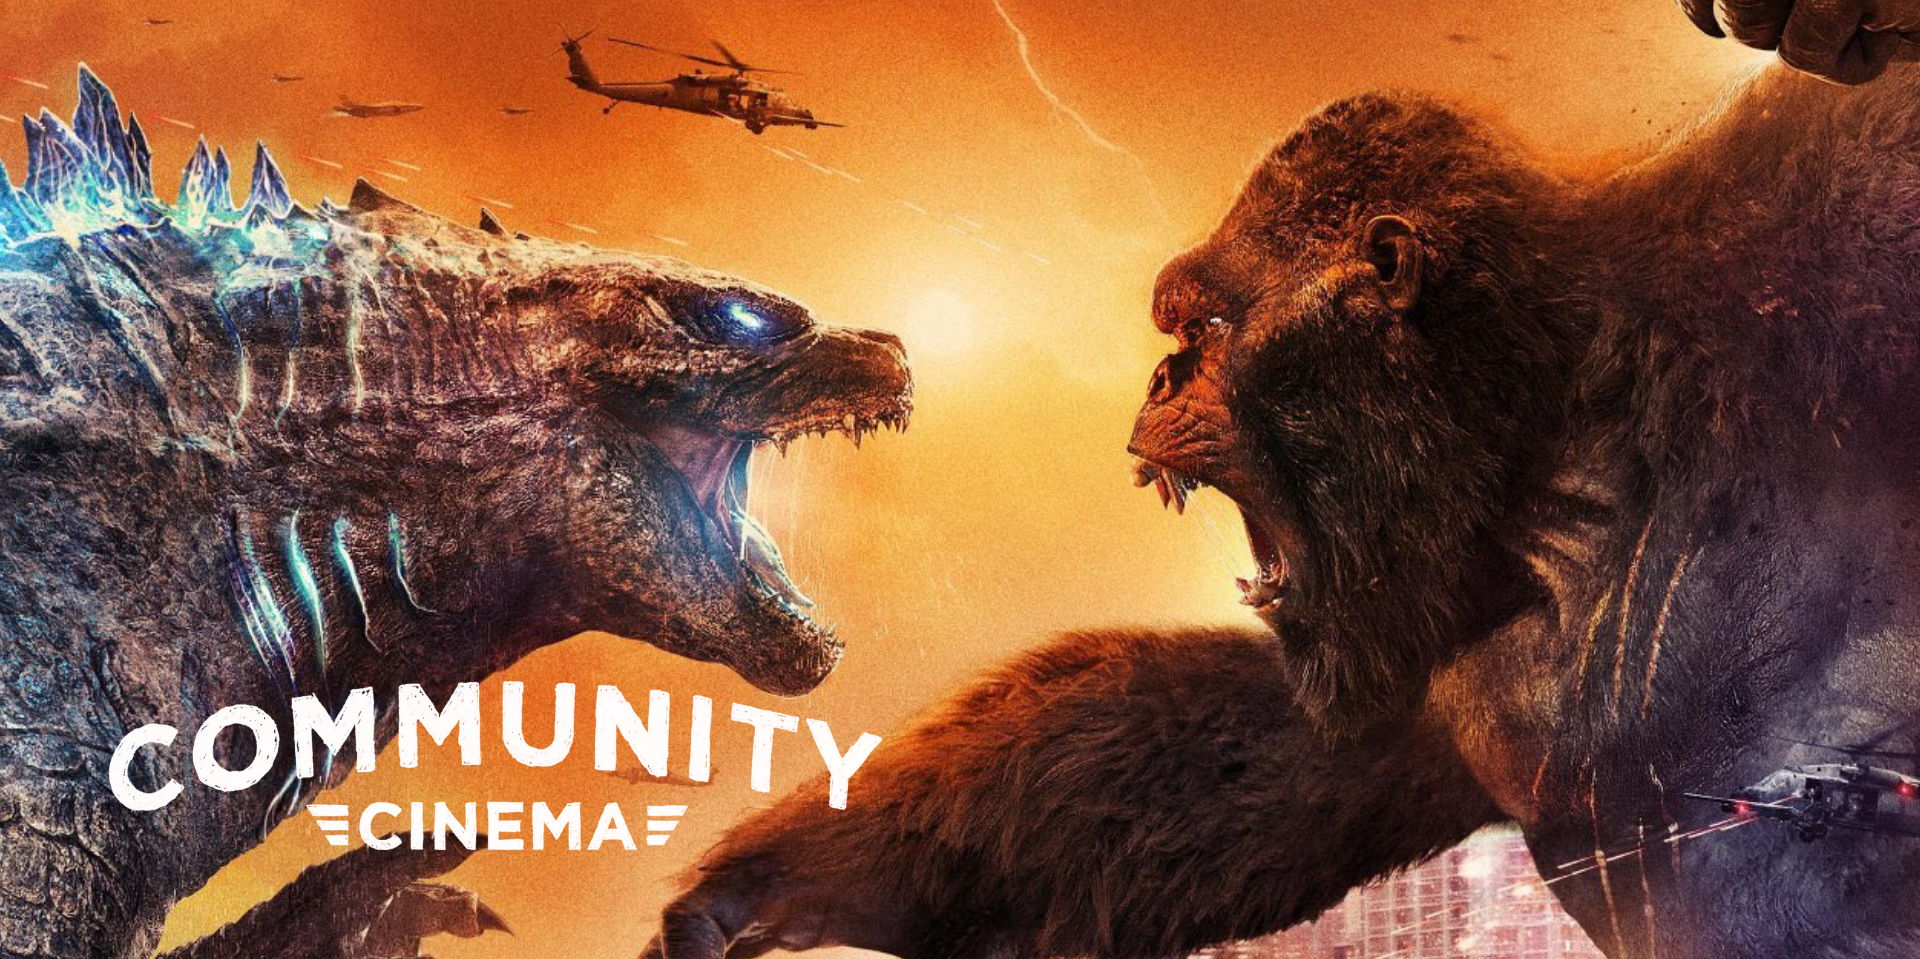 Godzilla Vs. Kong (2021) - Community Cinema & Amphitheater promotional image